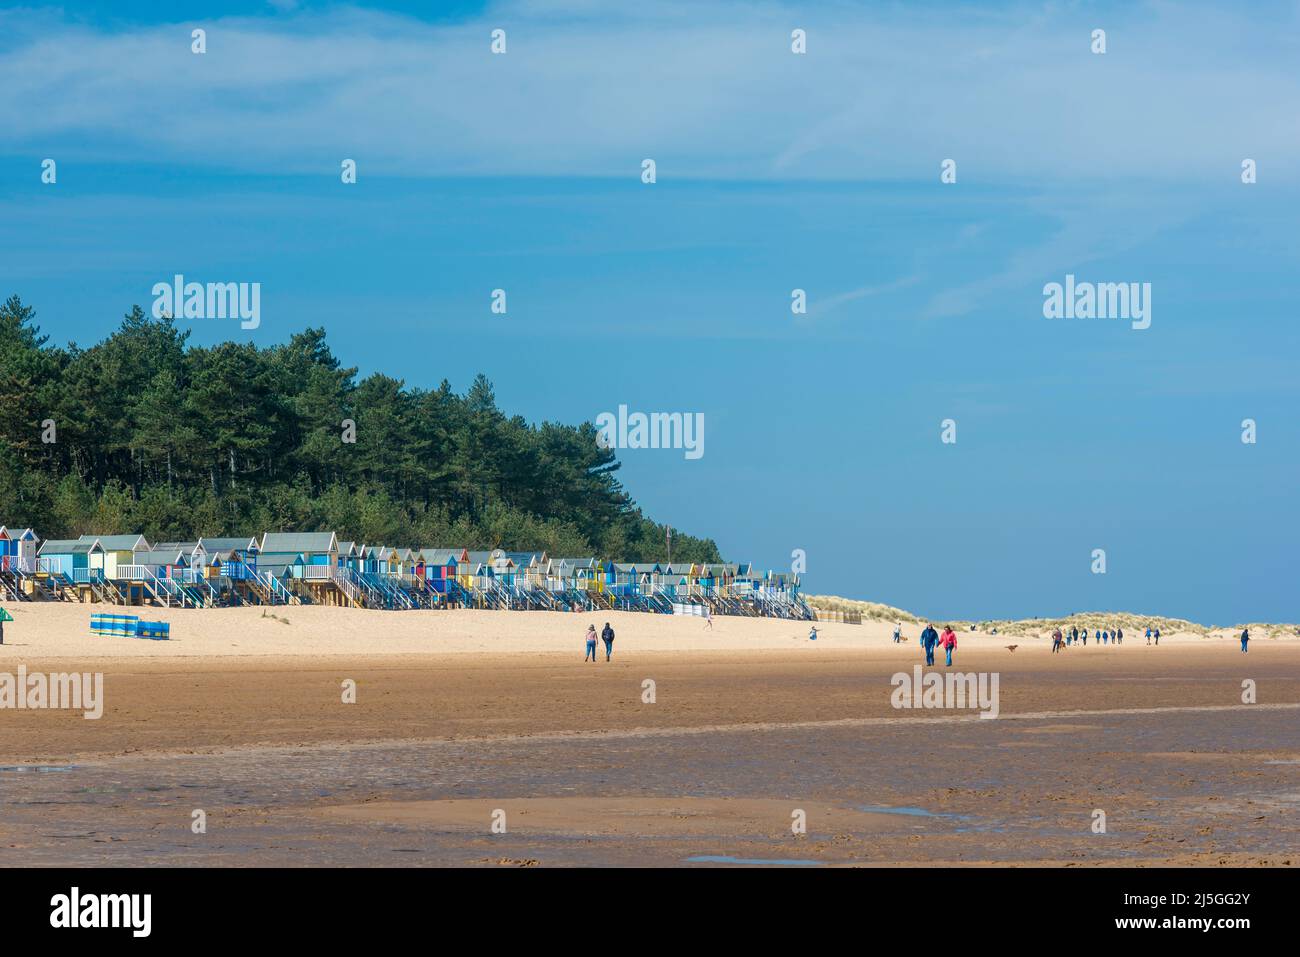 Personnes marchant sur la plage, vue des personnes marchant sur la plage à Wells-Next-the-Sea sur la côte nord de Norfolk, Angleterre, Royaume-Uni Banque D'Images